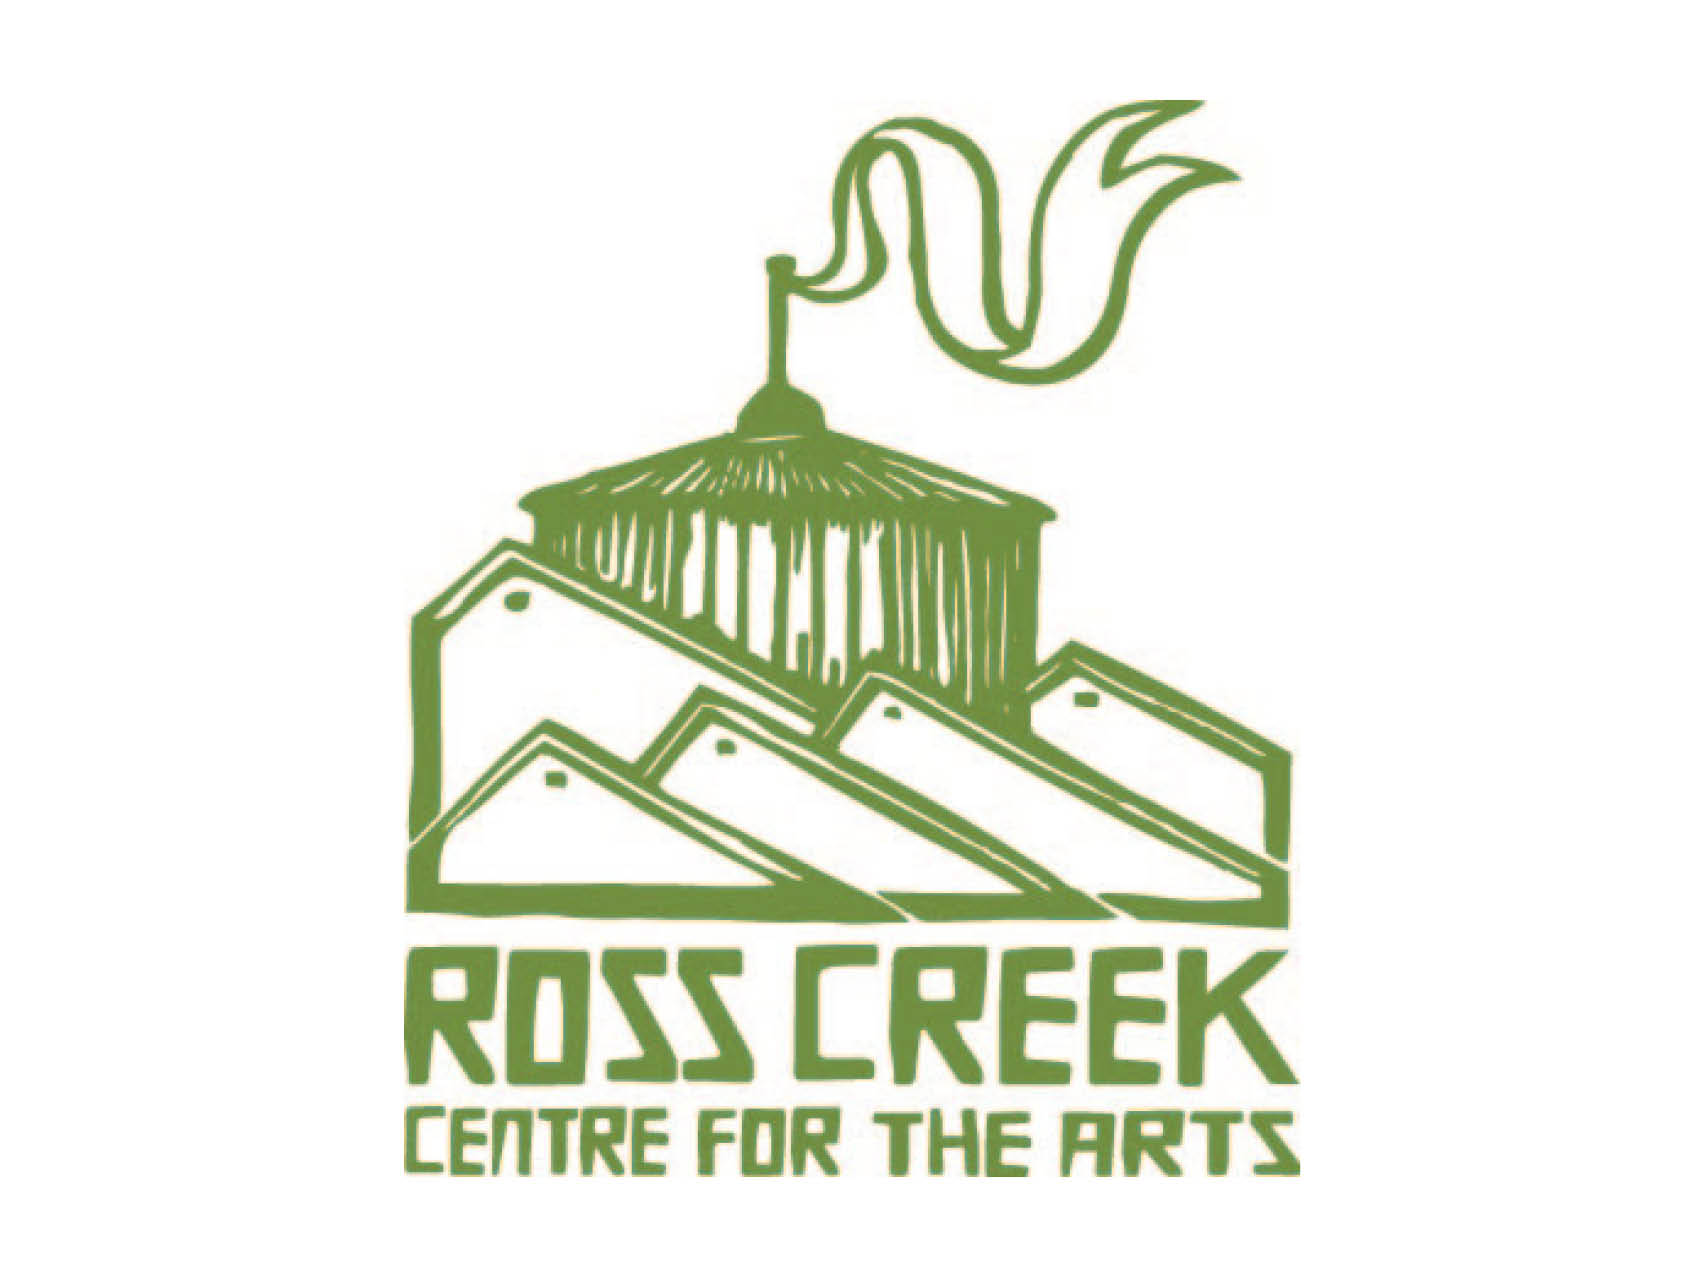 ross creak centre for the arts logo